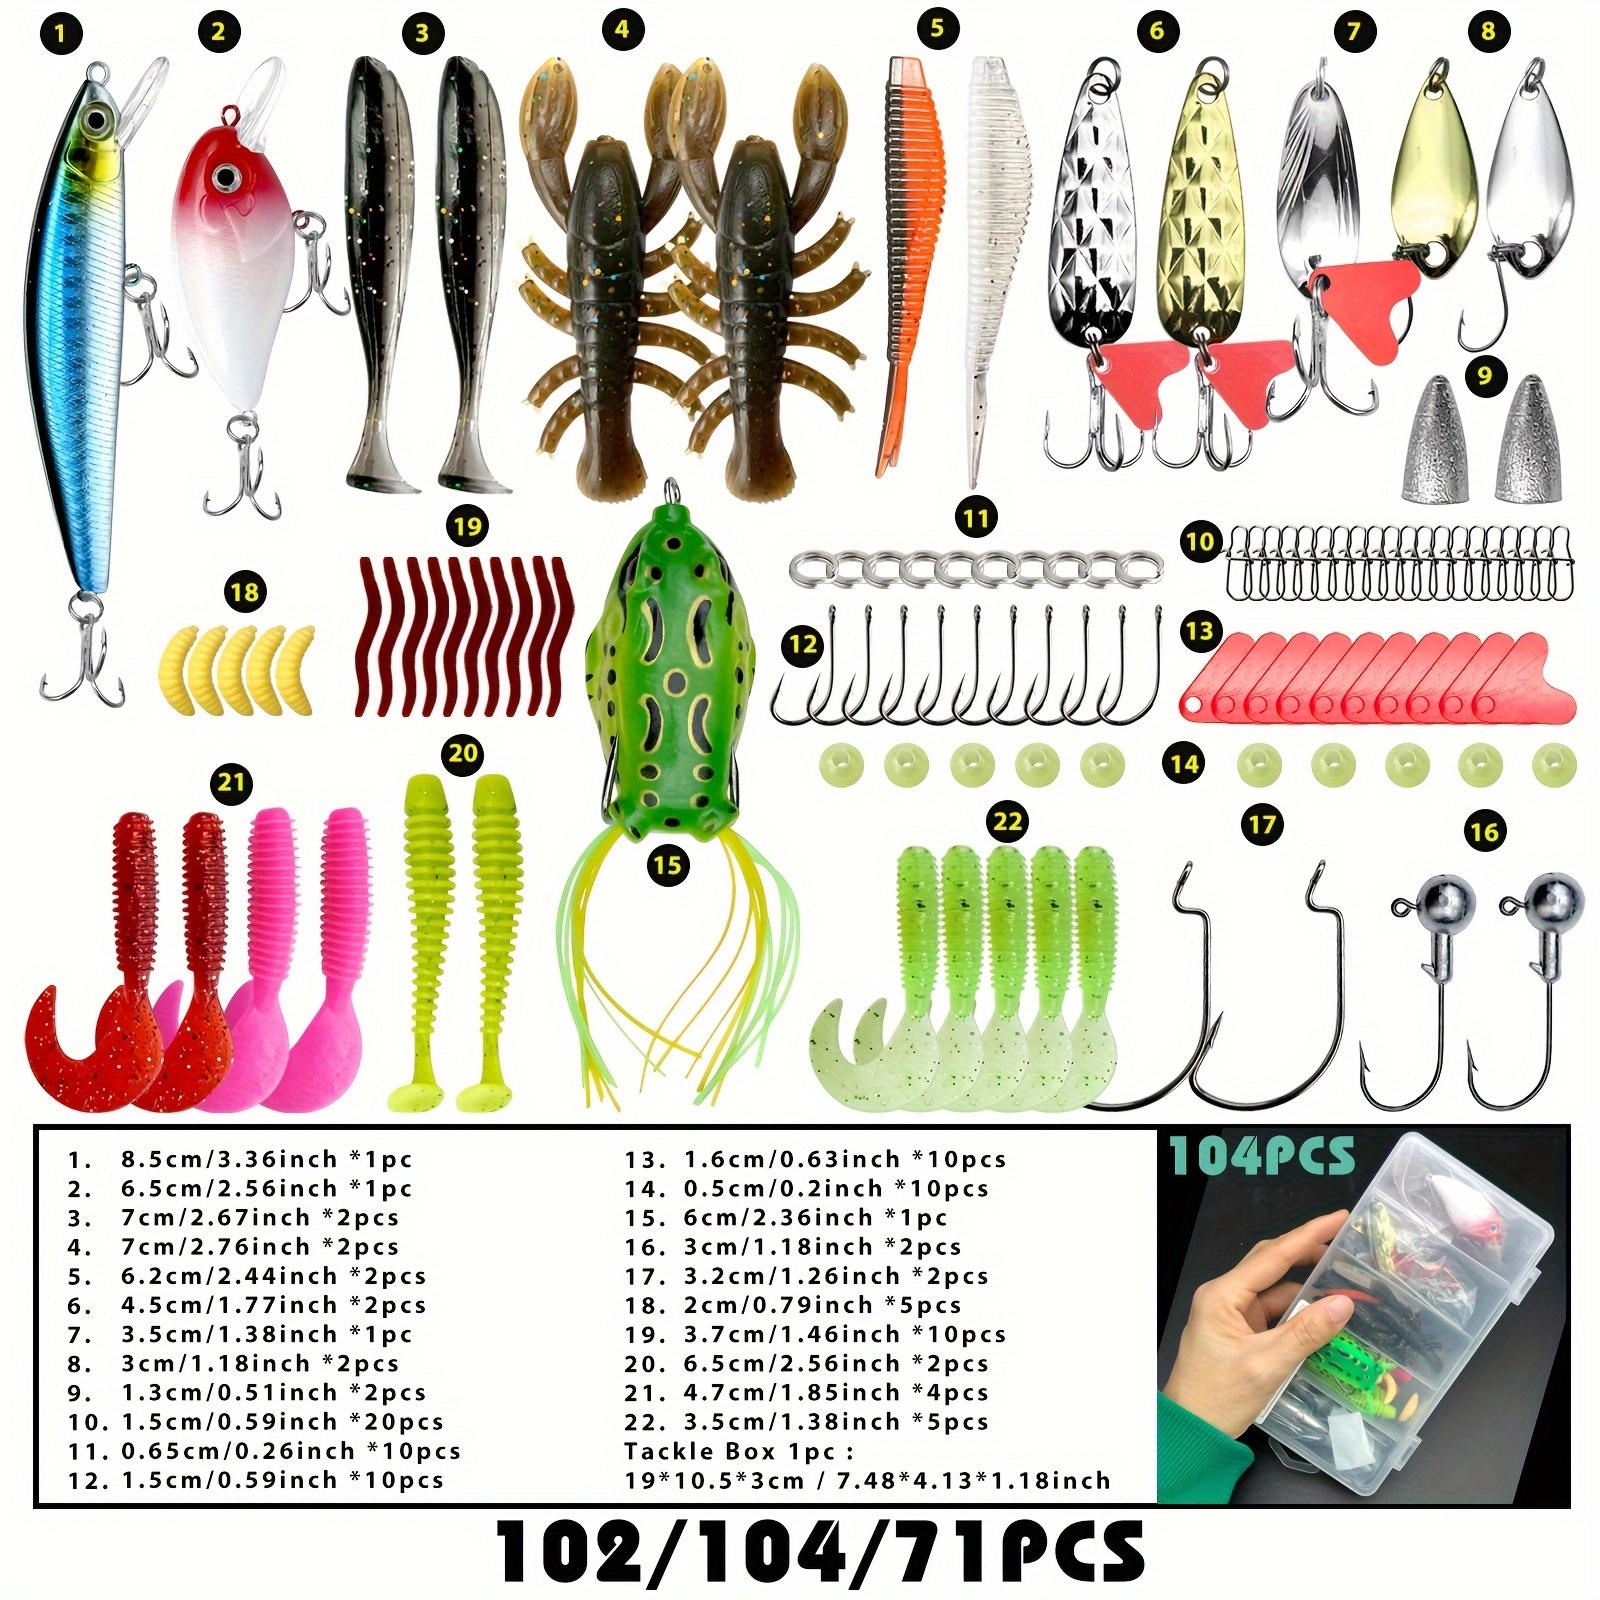 307pcs Carp Fishing Tackle Box Kit, Include Curve Shank Carp